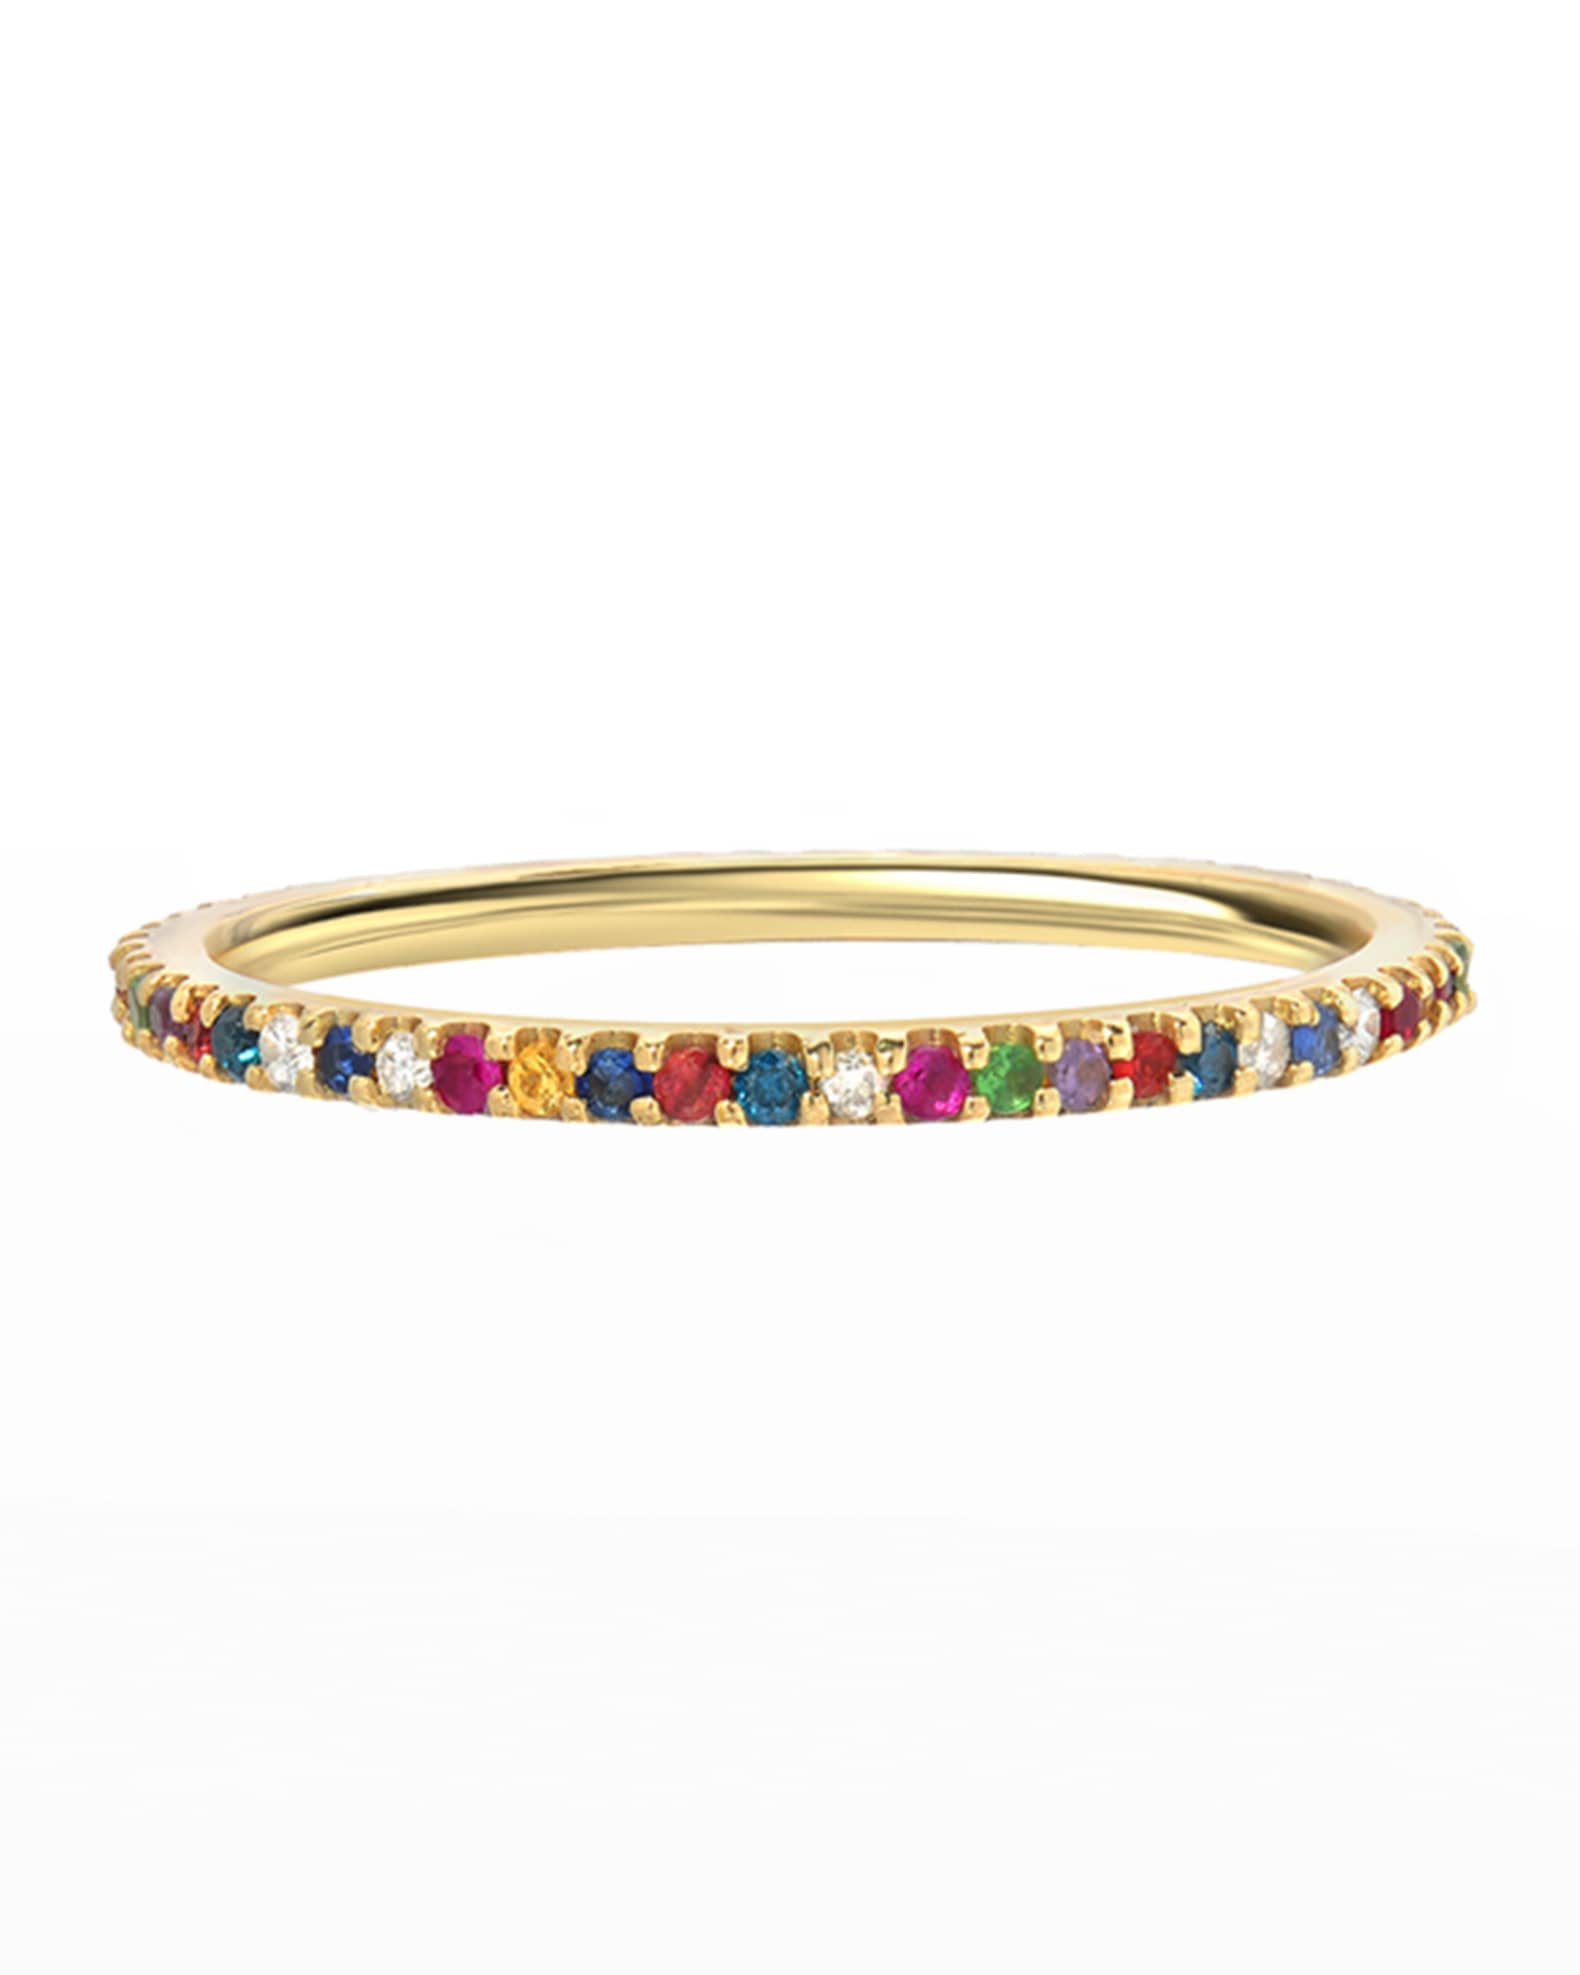 Zoe Lev Jewelry 14k Rainbow Eternity Ring, Size 6-8 | Neiman Marcus